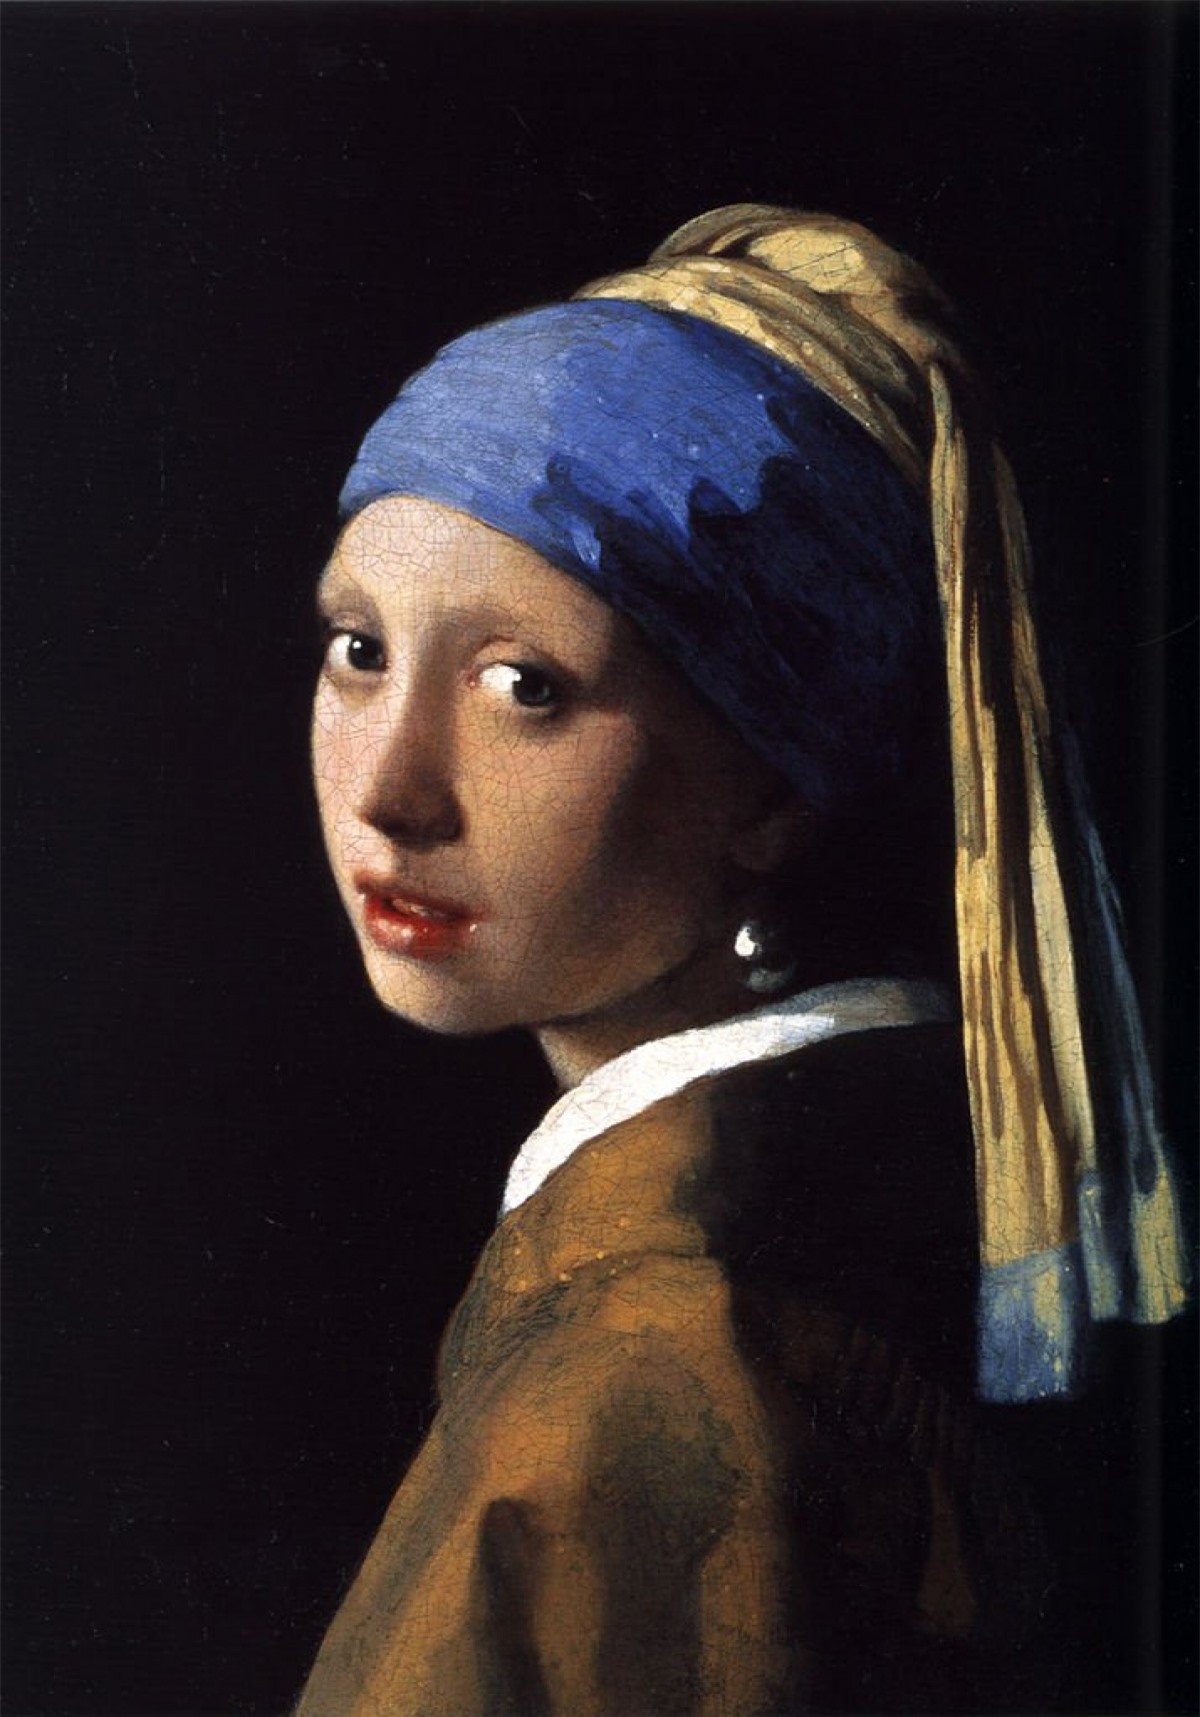 Thiếu nữ đeo hoa tai ngọc trai – Johannes Vermeer. Được nhiều người coi là “Mona Lisa của Hà Lan” hay “Mona Lisa của phương Bắc”, bức tranh của hoạ sĩ người Hà Lan Johannes Vermeer vẽ một cô gái đeo hoa tai ngọc trai. Bức tranh được hoàn thành vào năm 1665 và được trưng bày tại Phòng trưng bày Mauritshuis ở Hague, Hà Lan